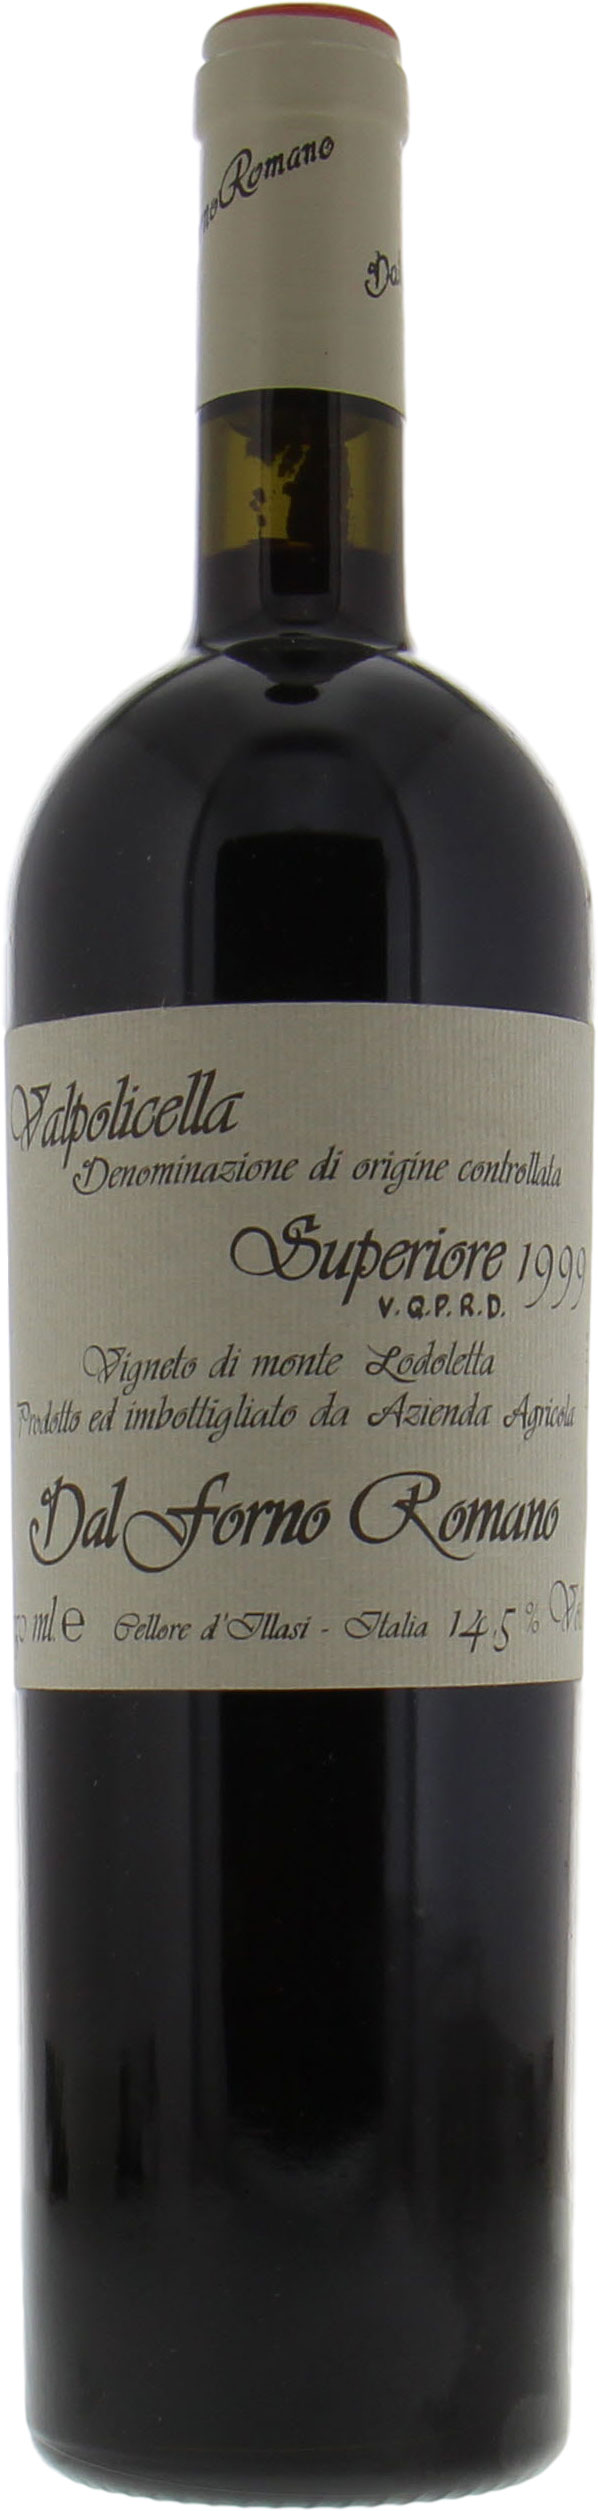 Dal Forno - Romano Valpolicella 1999